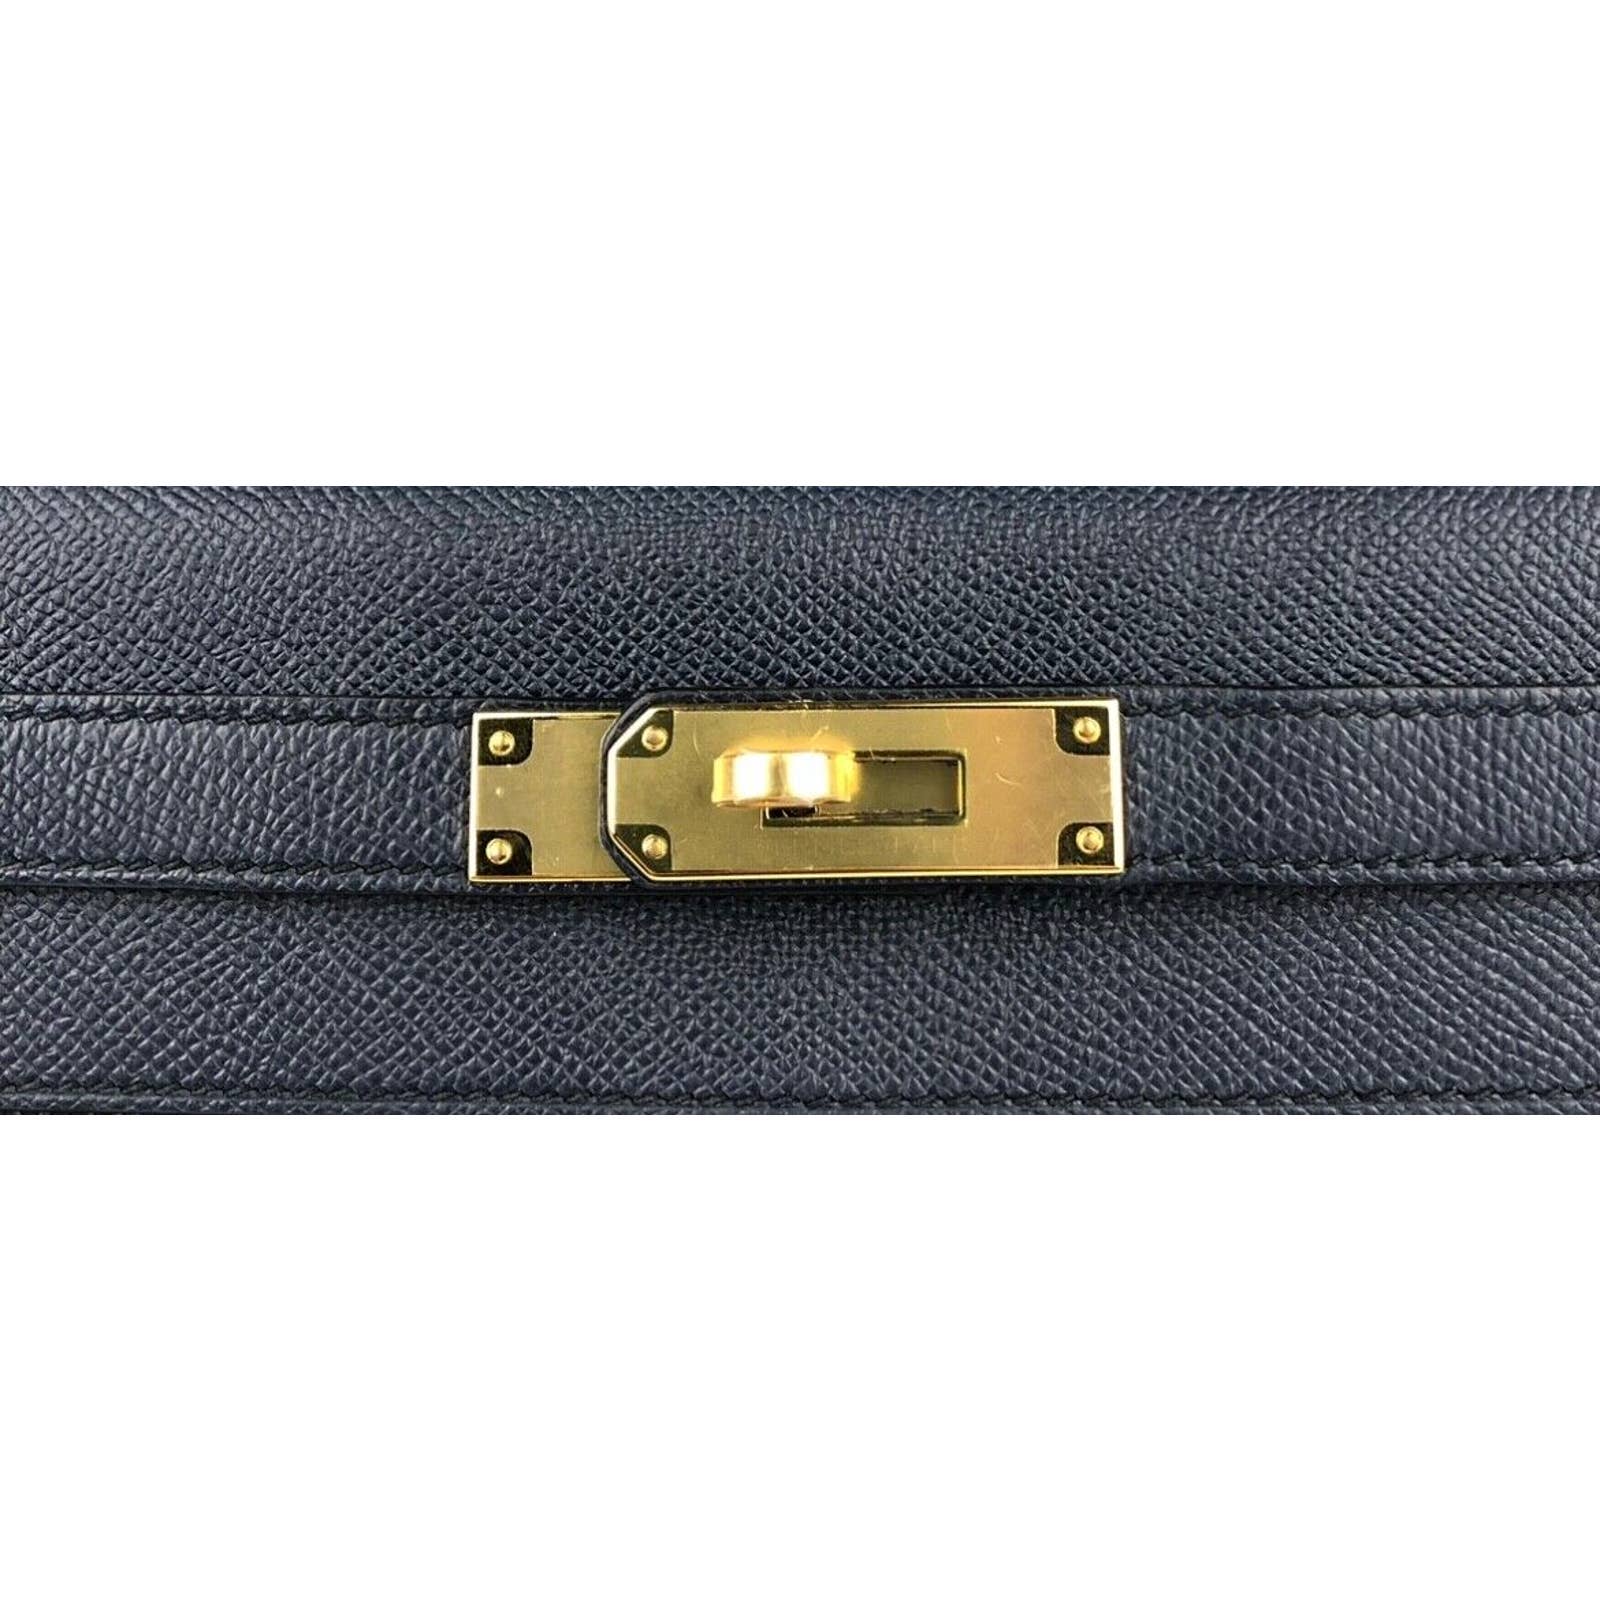 Kelly 28 🔹️ Black and Blue indigo epsom 🔹️ Gold hardware